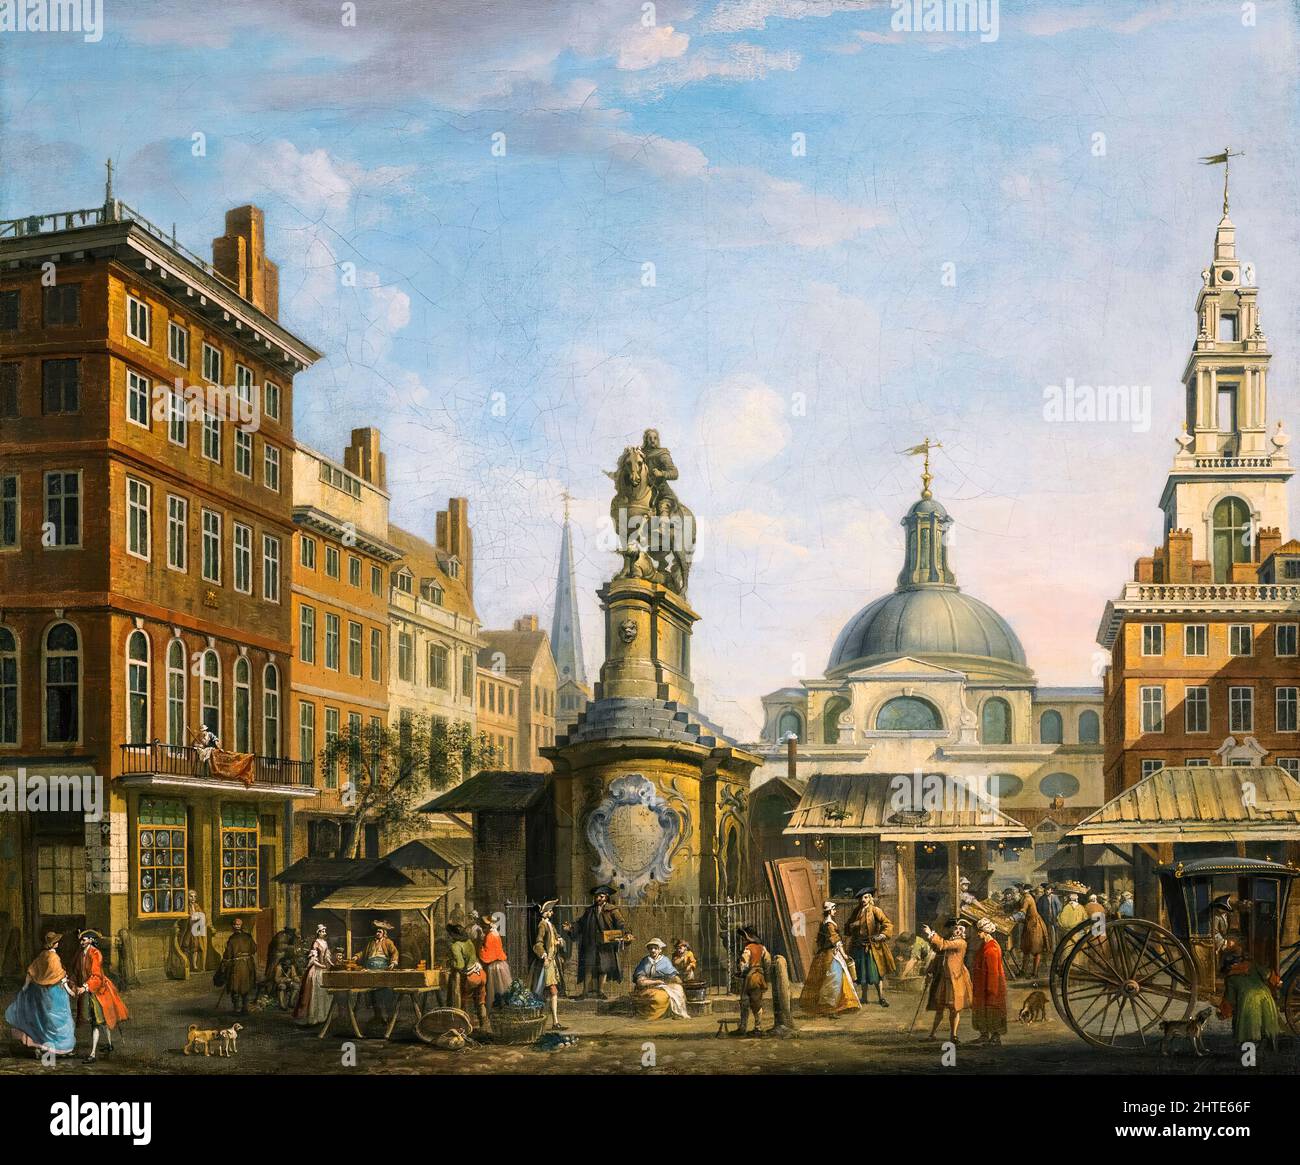 Vue du marché des stocks, Londres, peinture huile sur toile par Joseph Nickolls, avant 1738 Banque D'Images